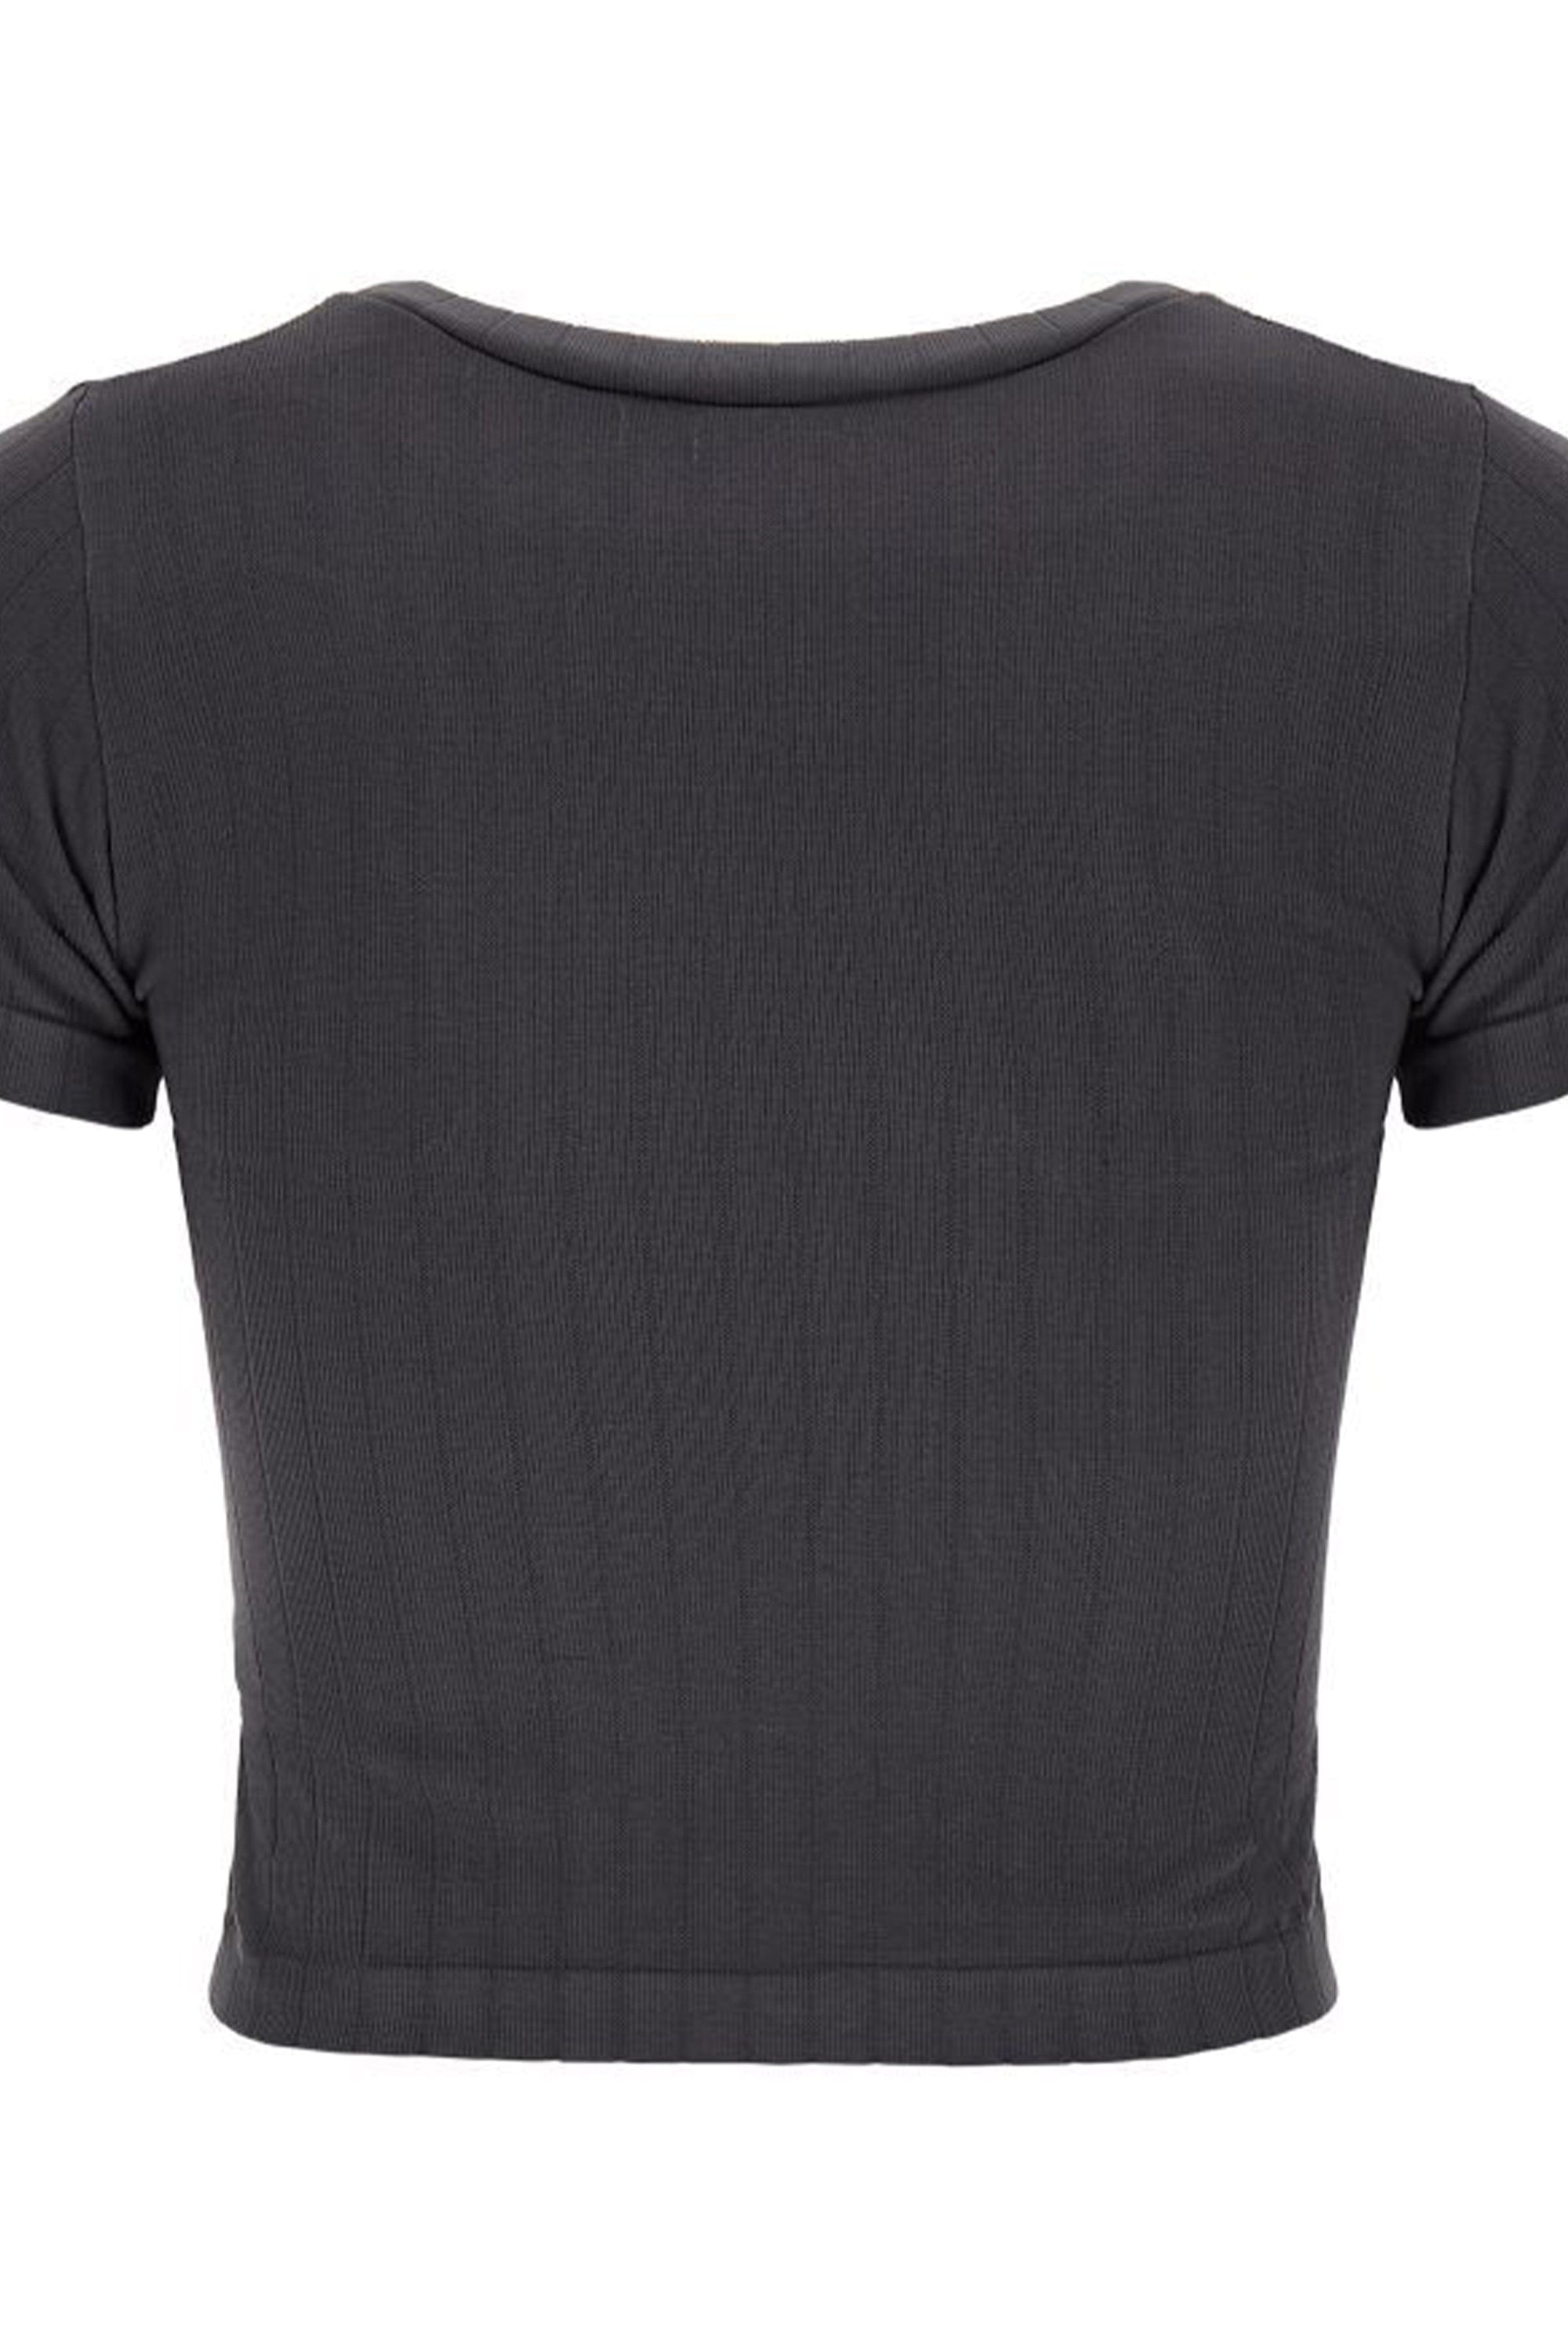 Ribbed T Shirt - Charcoal 3